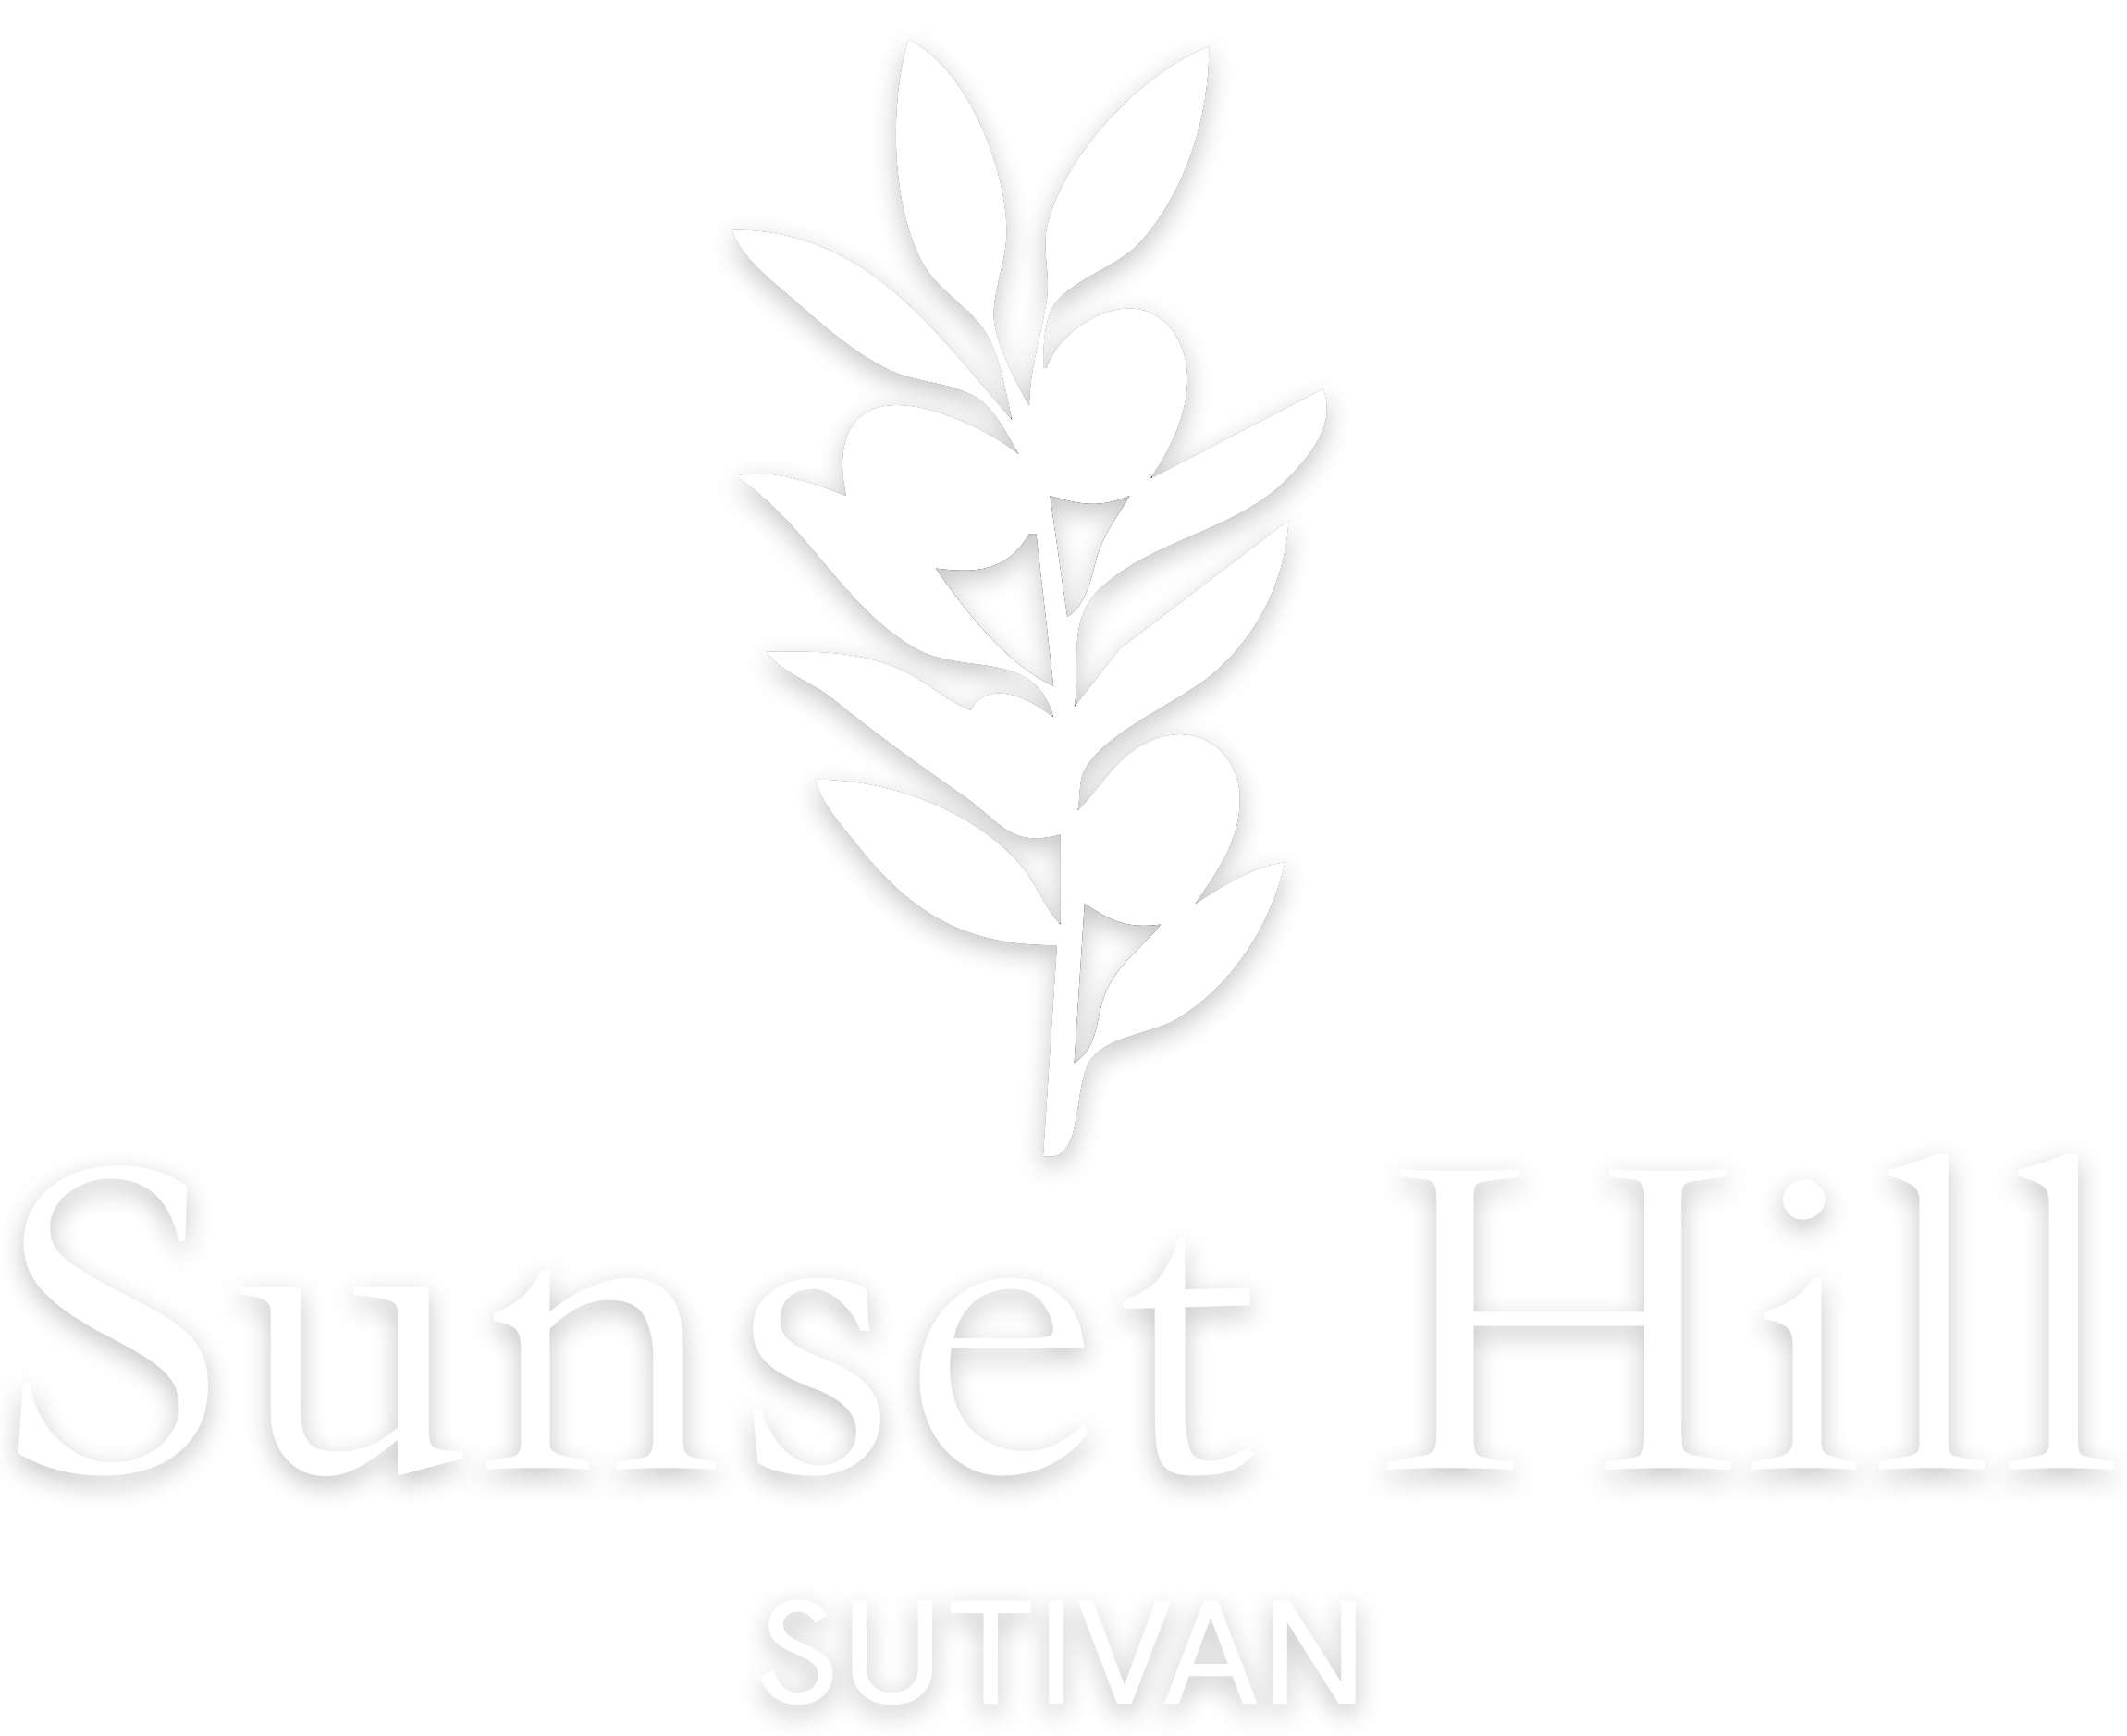 SUNSET HILL